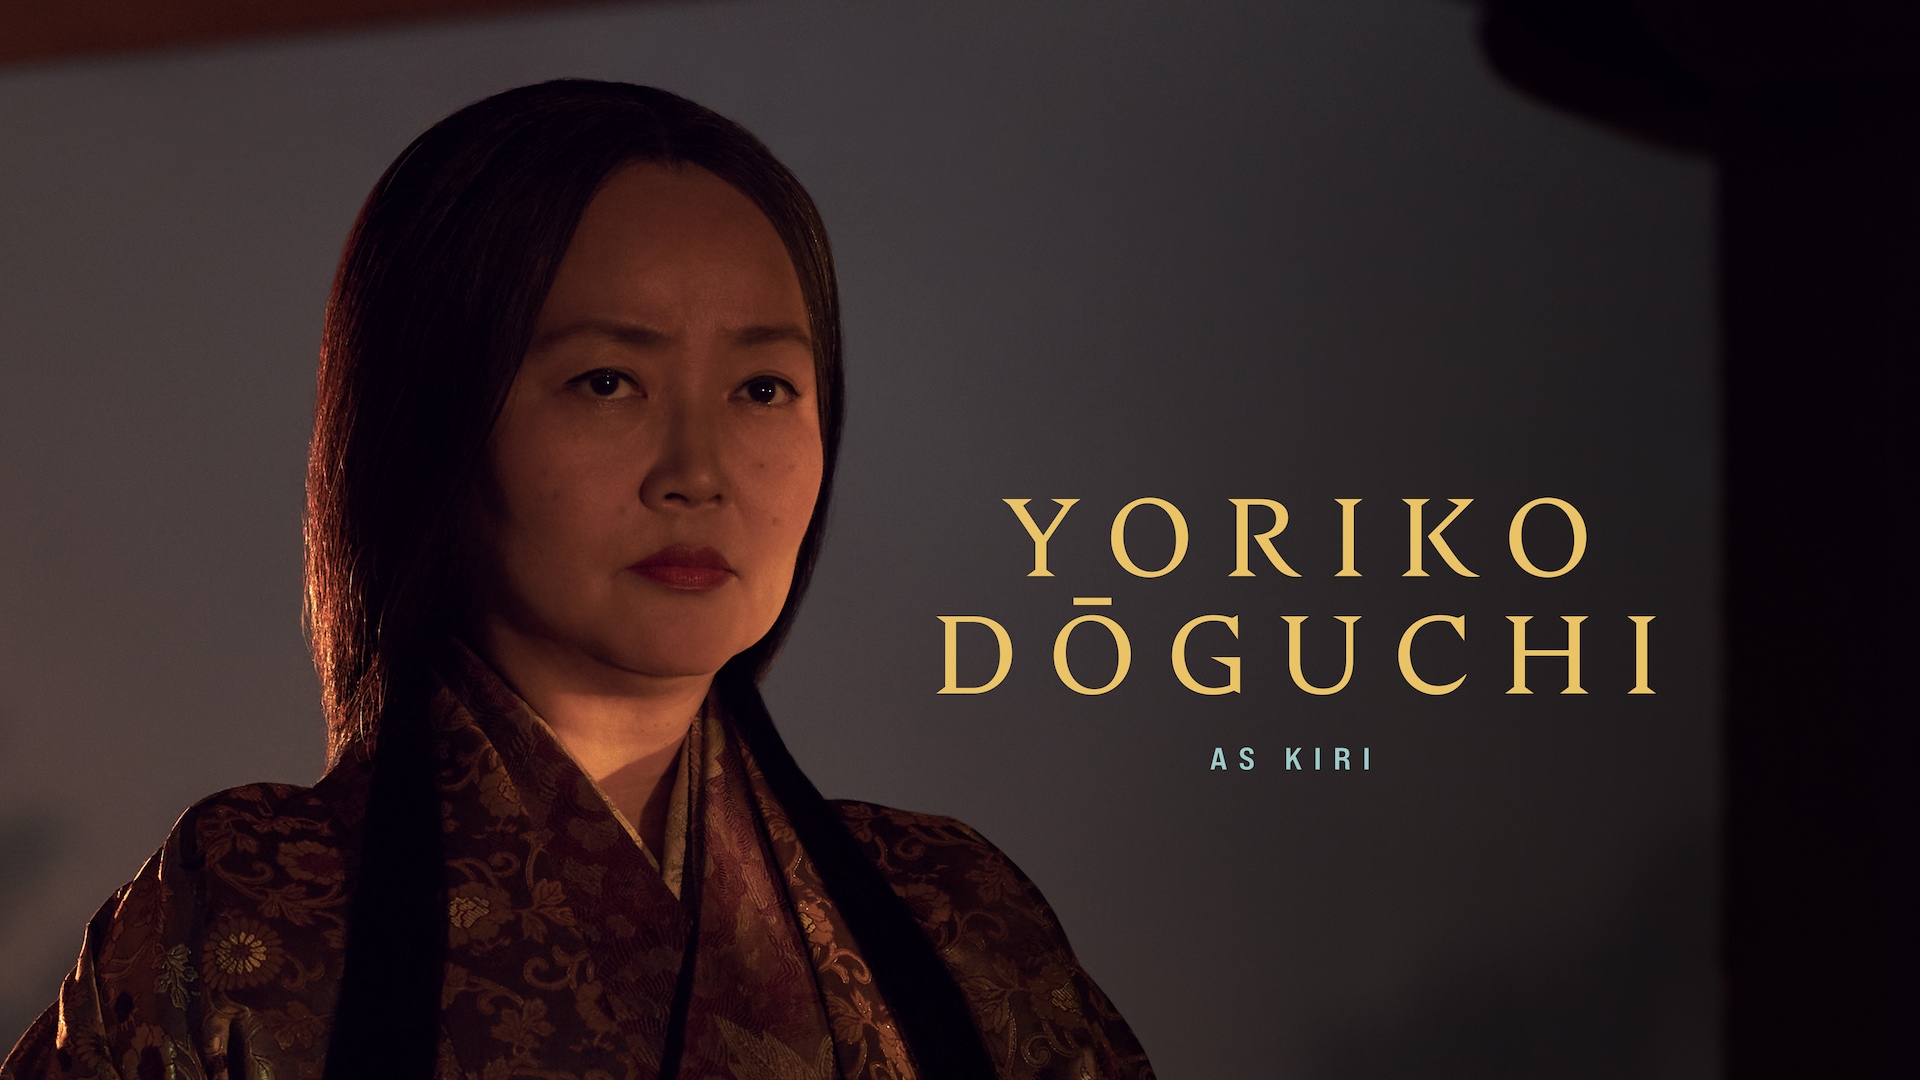 Yoriko Doguchi as consort Kiri no Kata in FX's Shogun